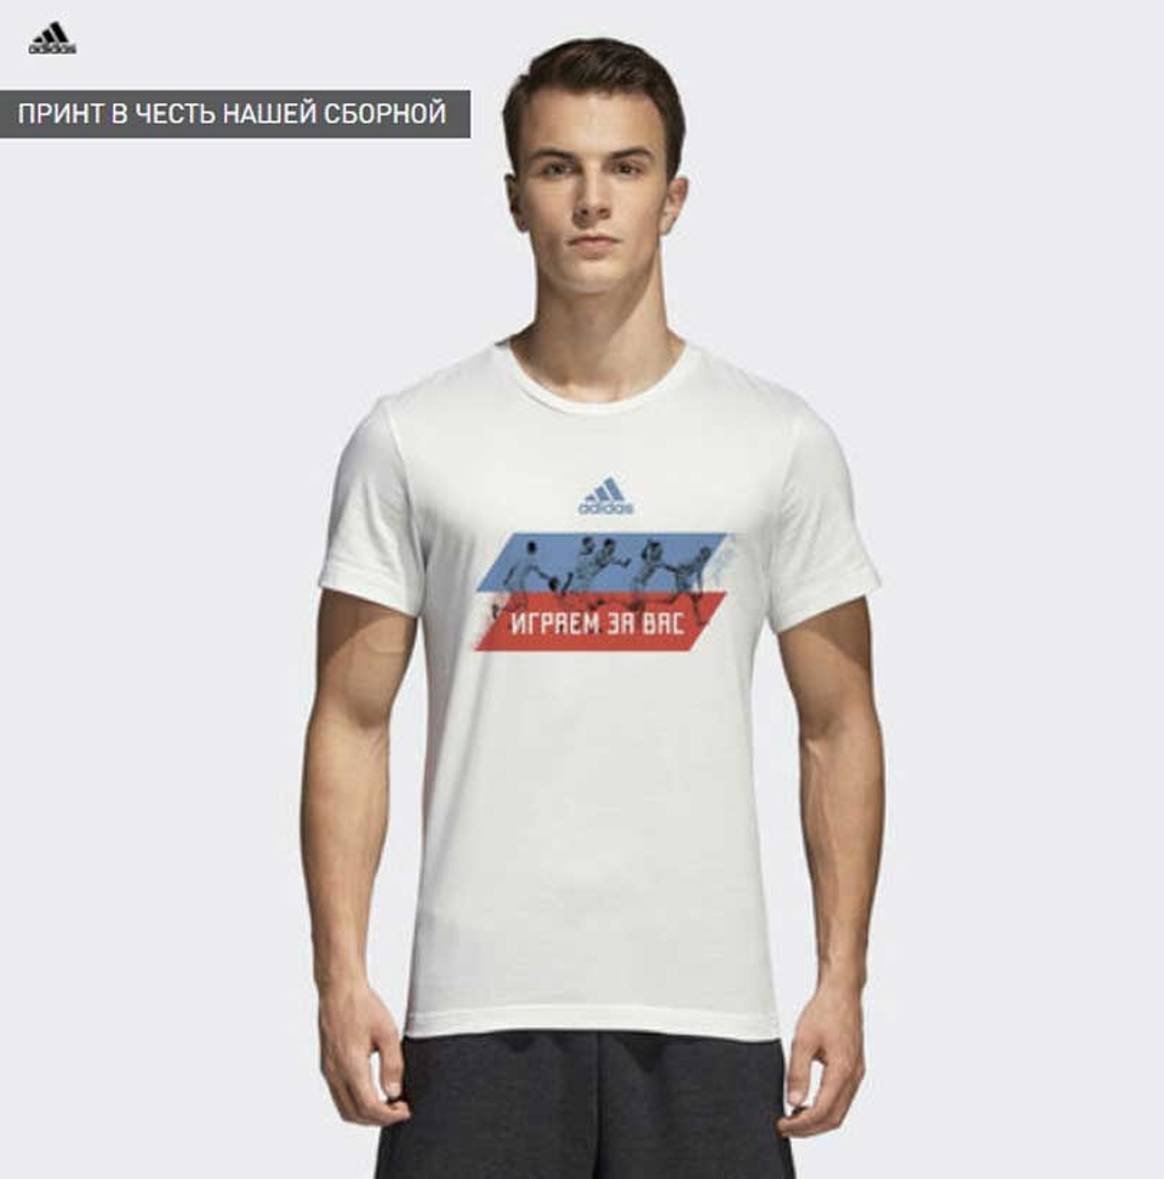 Adidas представил лимитированную коллекцию футболок "Играем за вас"